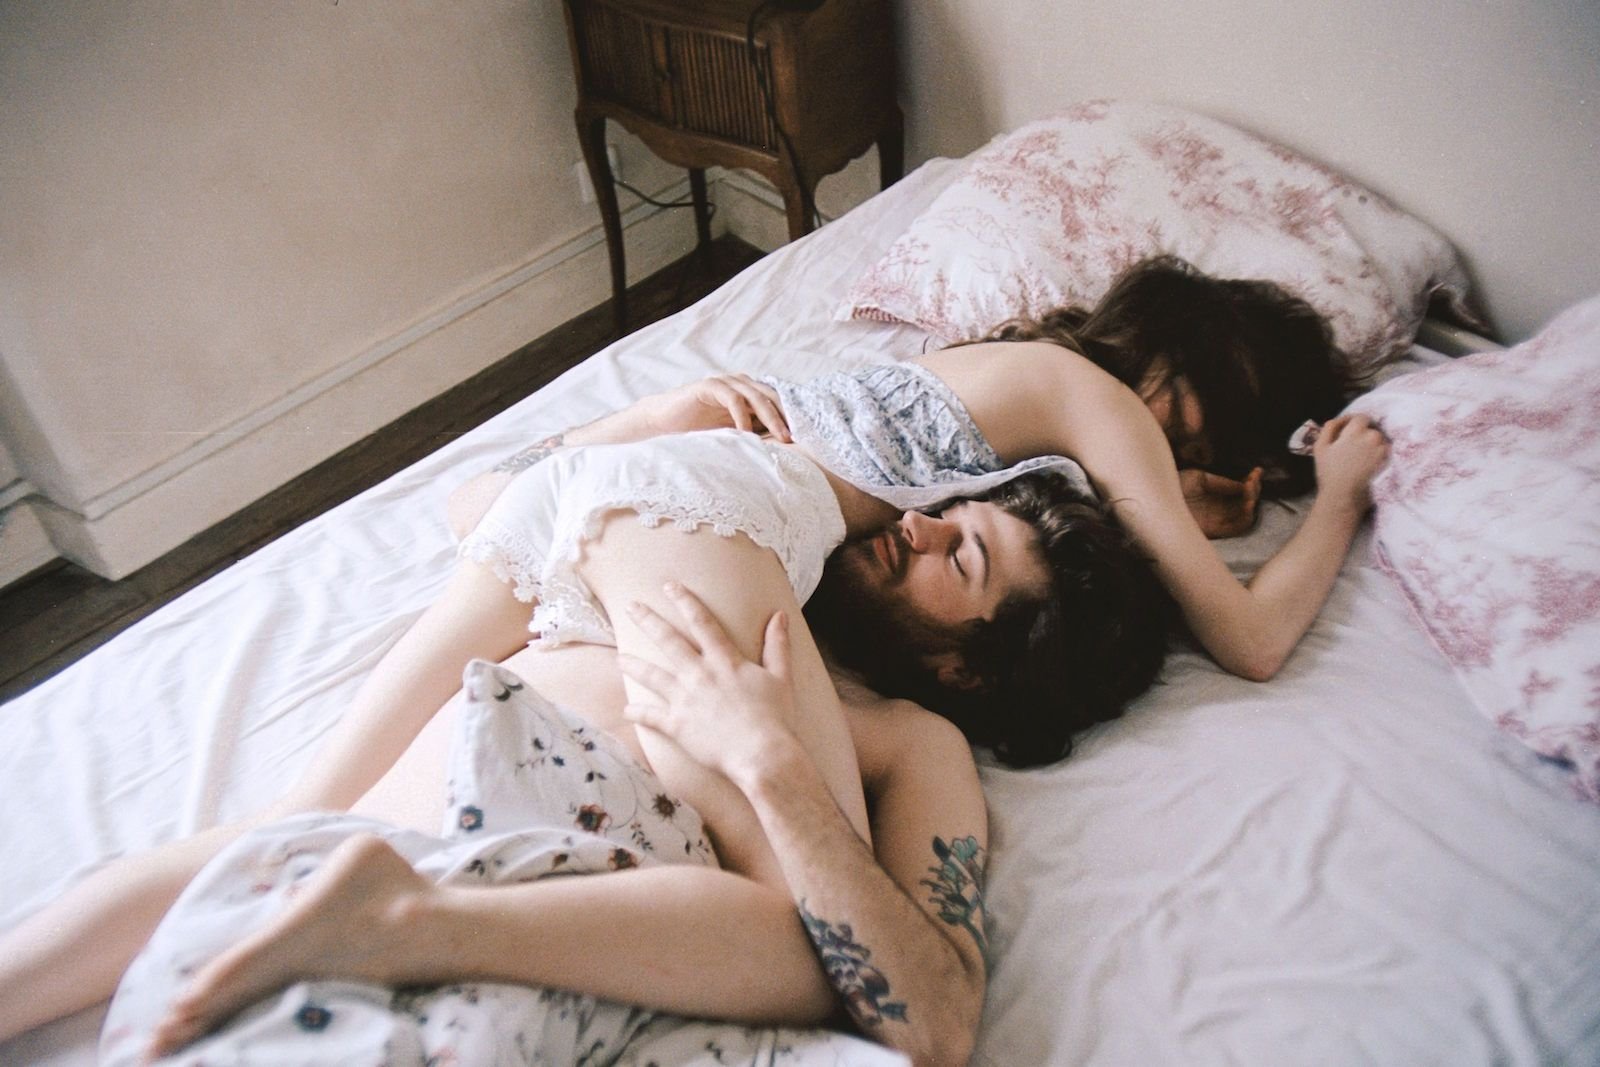 Фото мужчины и женщины на кровати фото